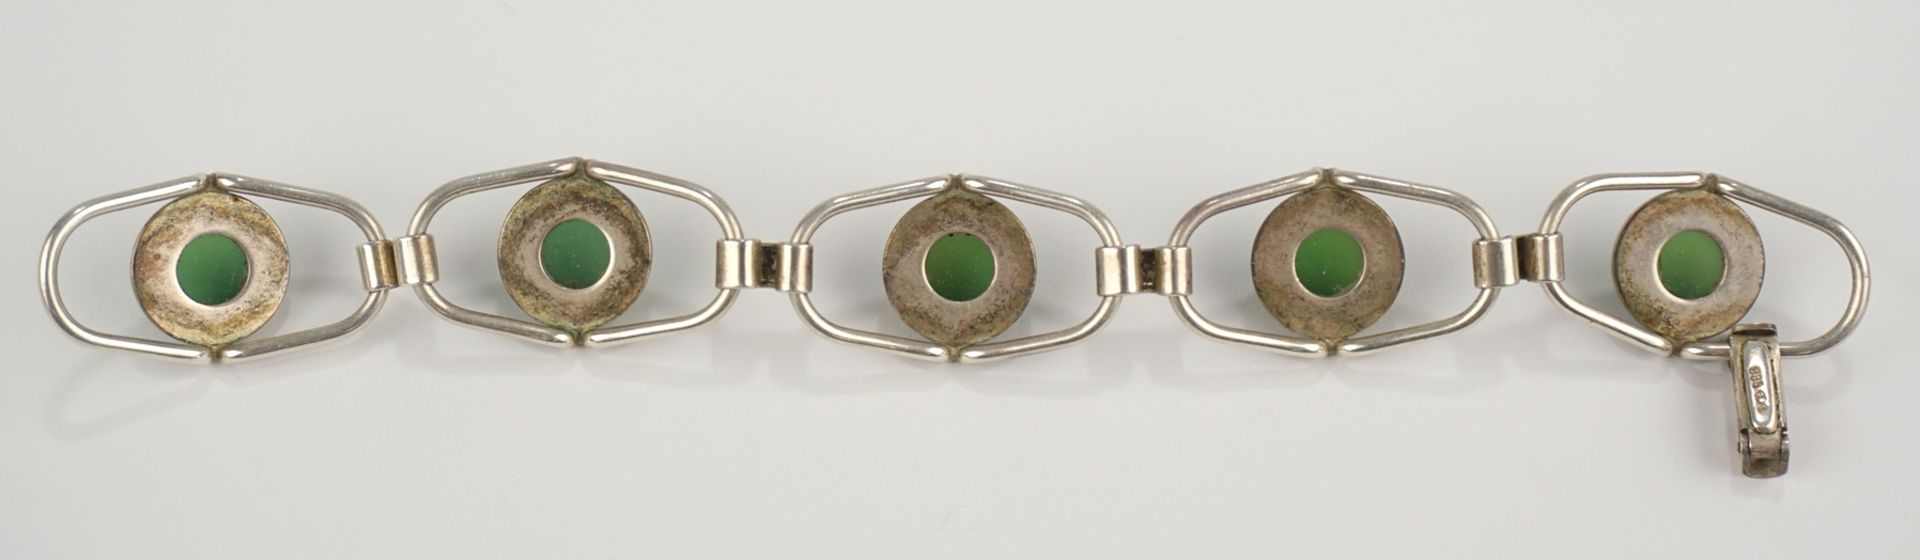 Armband mit grünen Steinen, Chrysopras?, Fischland, 835er Silber - Image 2 of 3